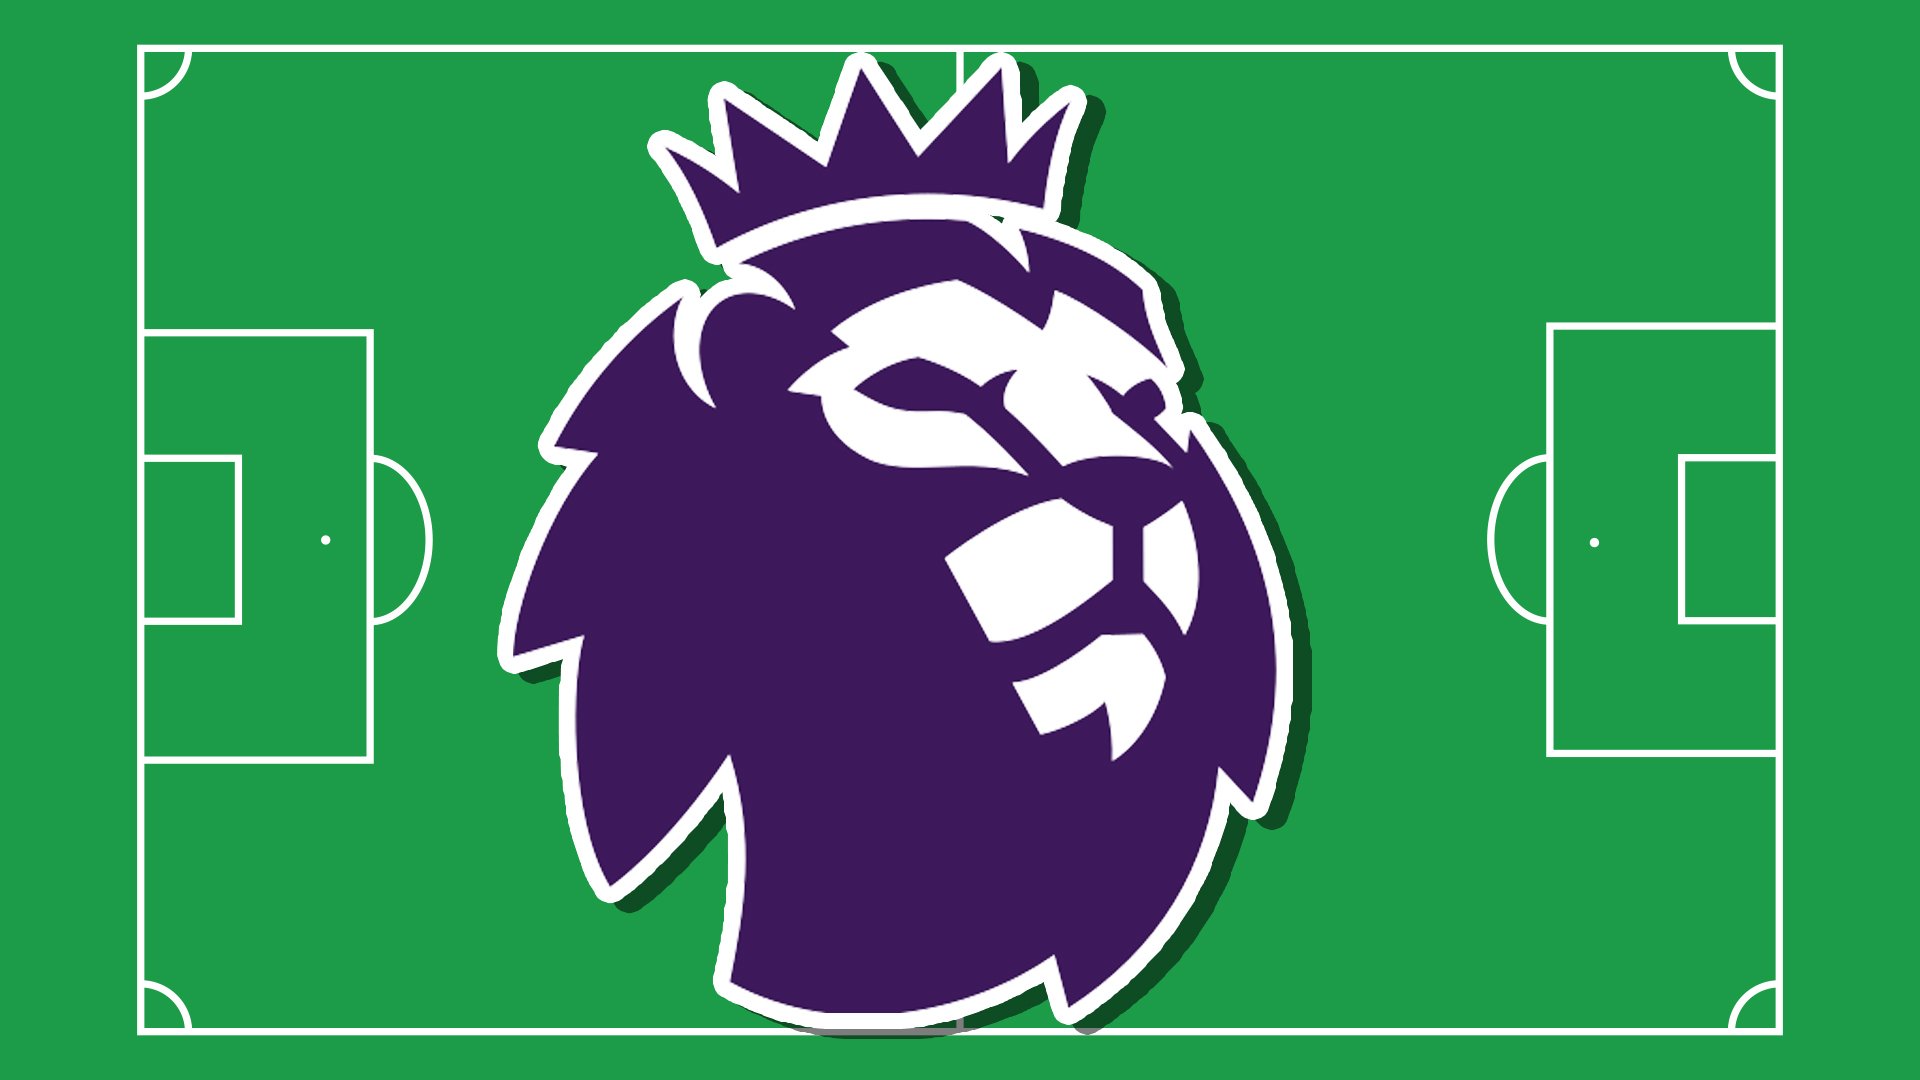 Premier League lion mascot